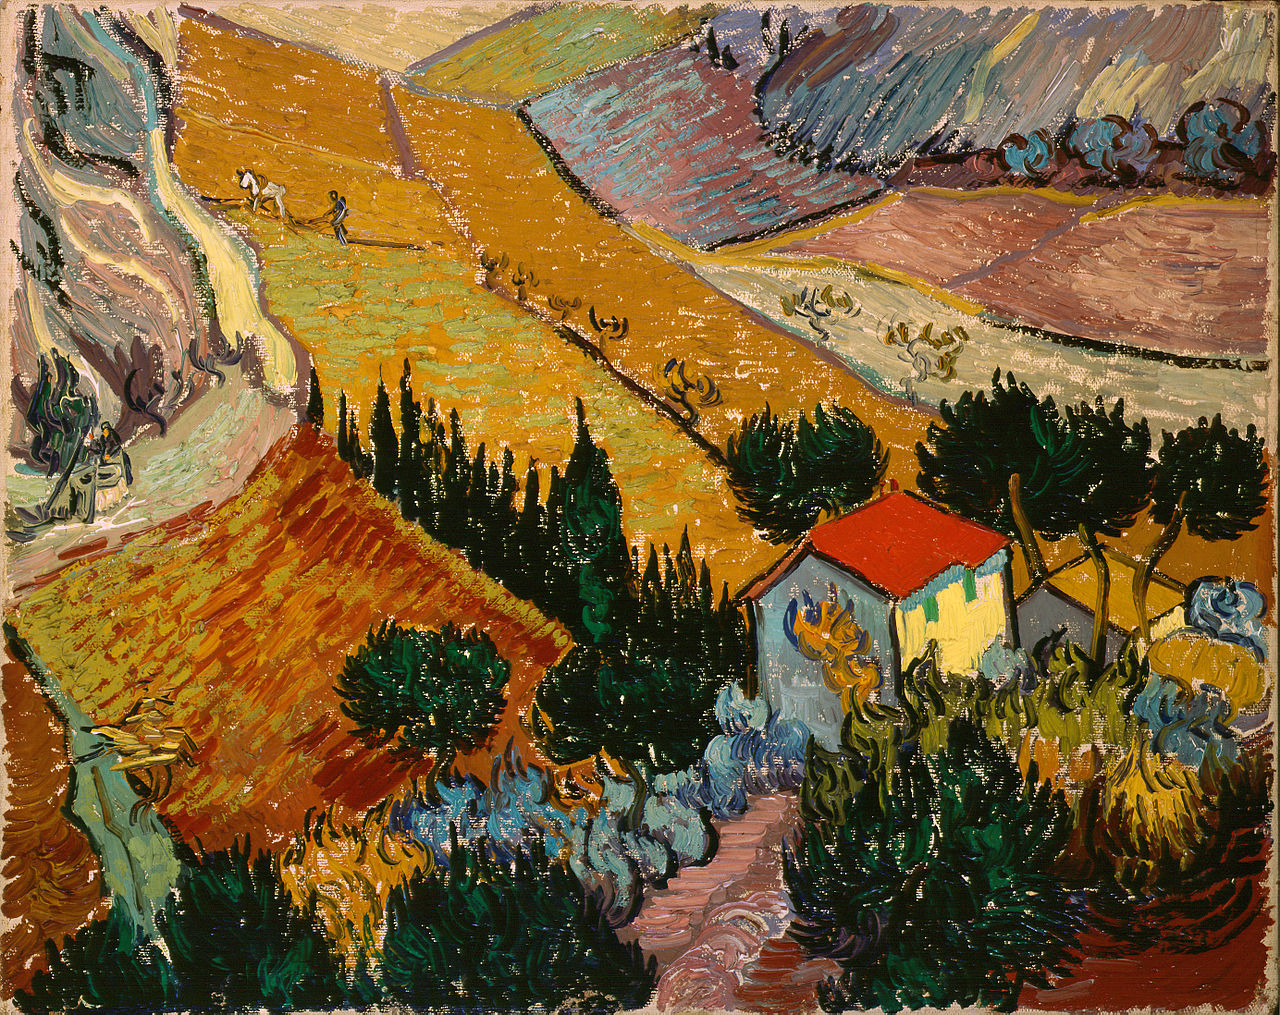 Landschap met huis en ploeger by Vincent Van Gogh - 1889 - 33 x 41,4 cm 